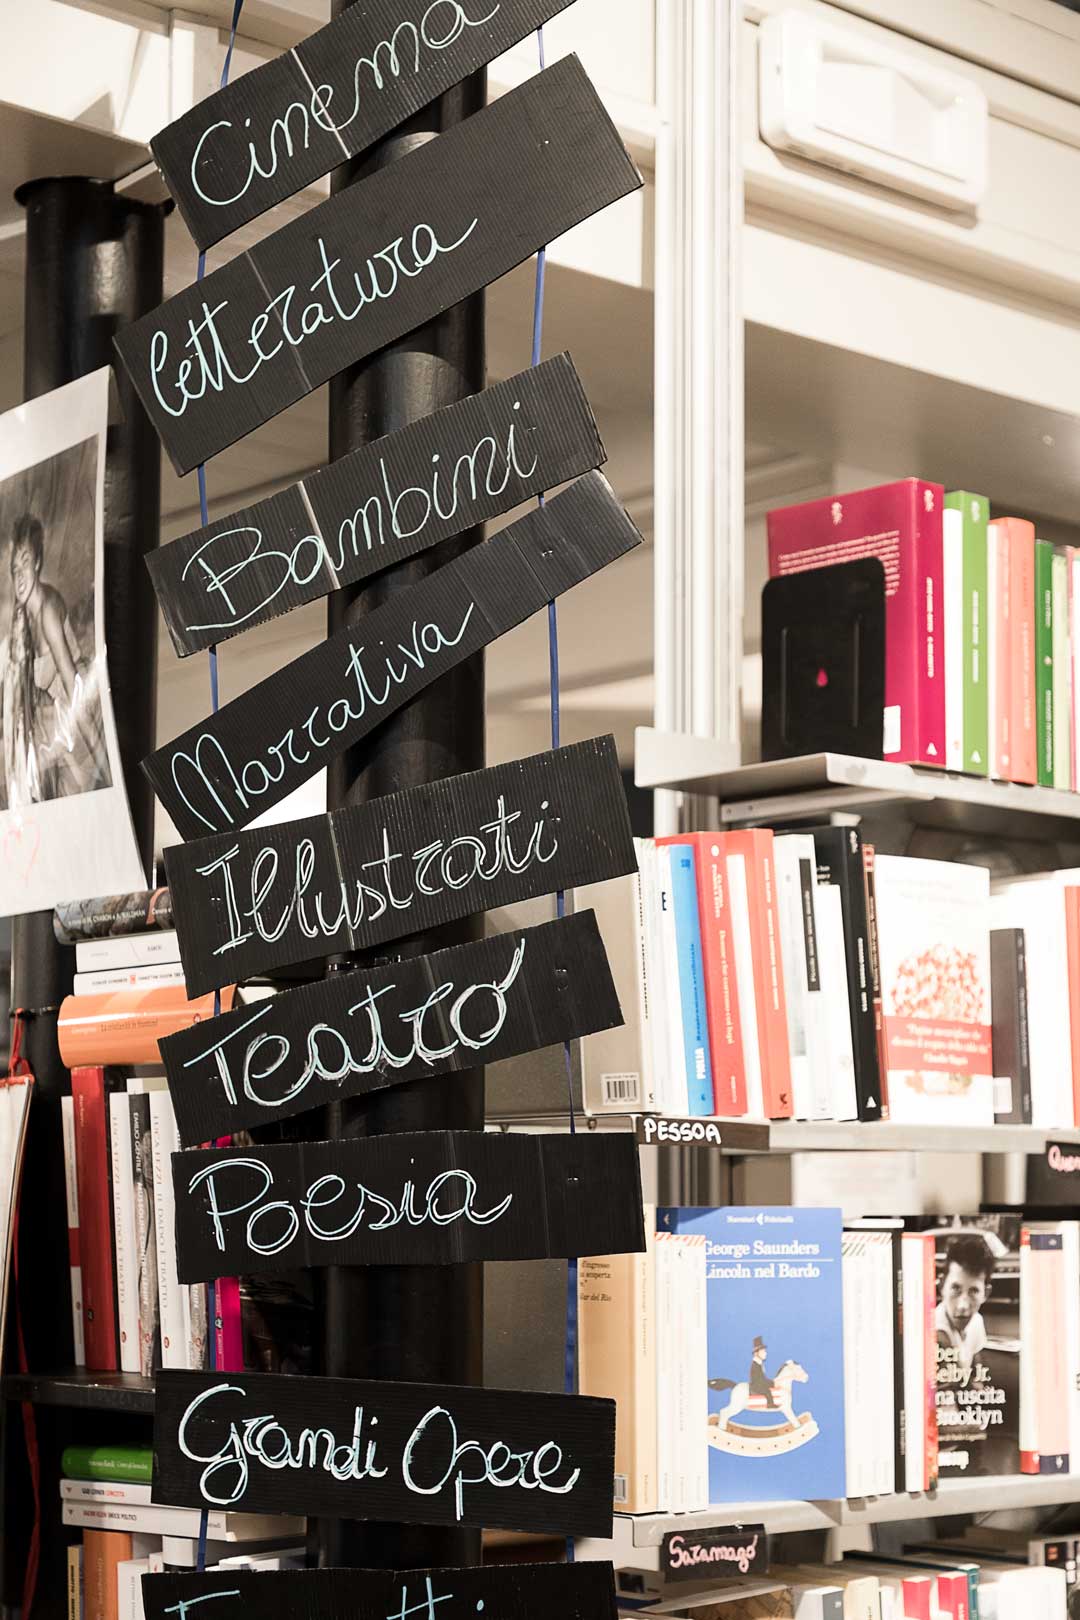 La libreria del mondo offeso - Milano